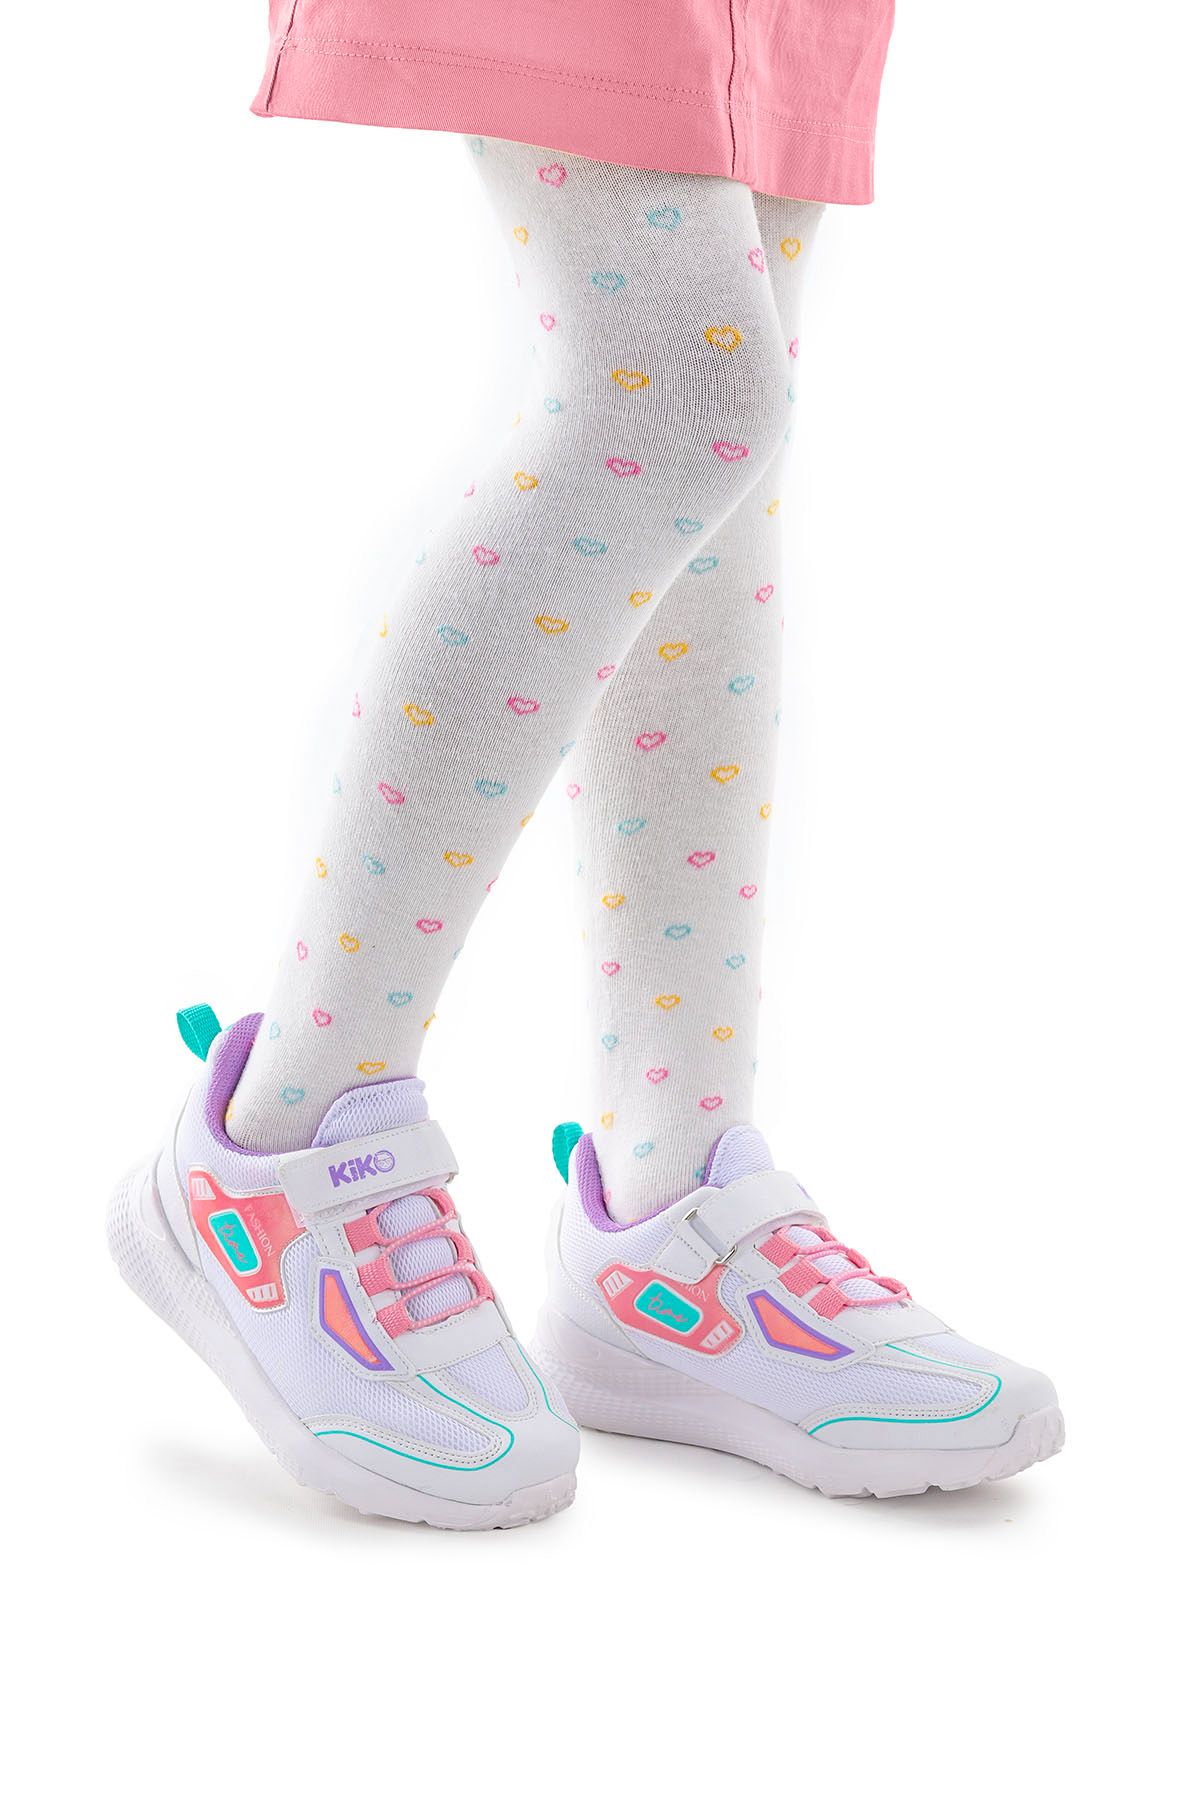 Kiko Kids Cırtlı Fileli Kız Çocuk Spor Ayakkabı 3003